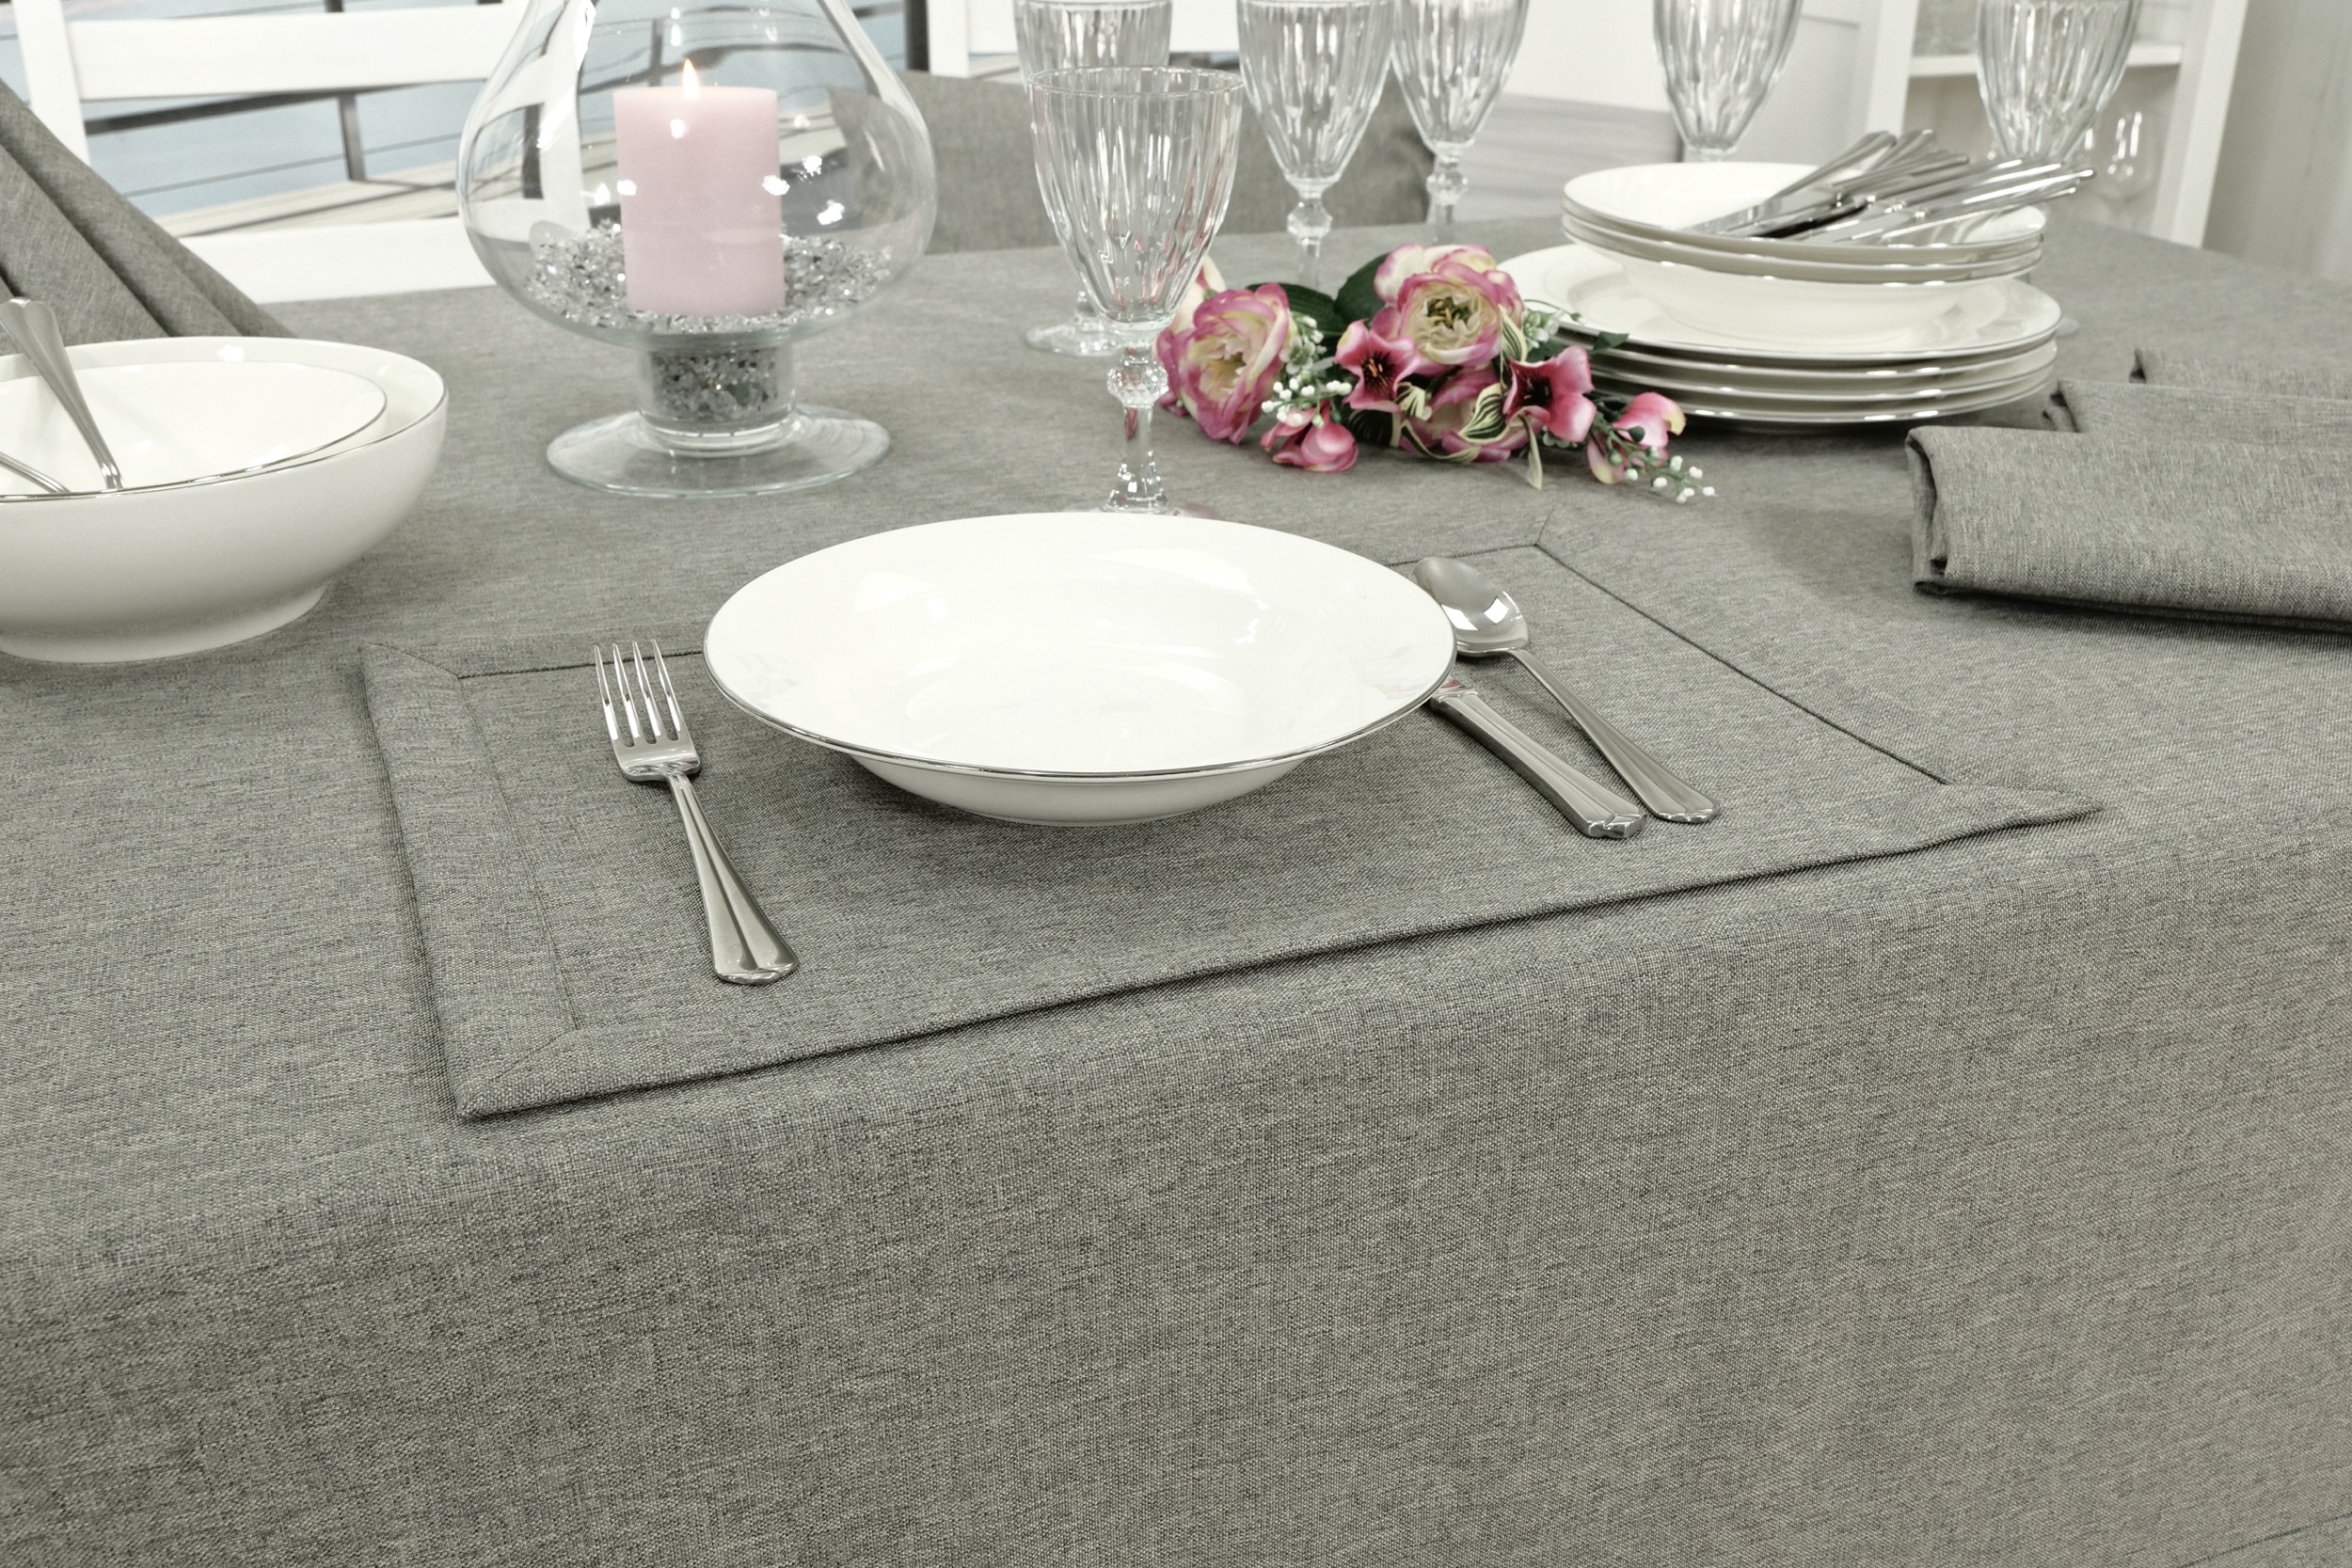 Edle Tischdecke Grau einfarbig Peony Breite 100 cm